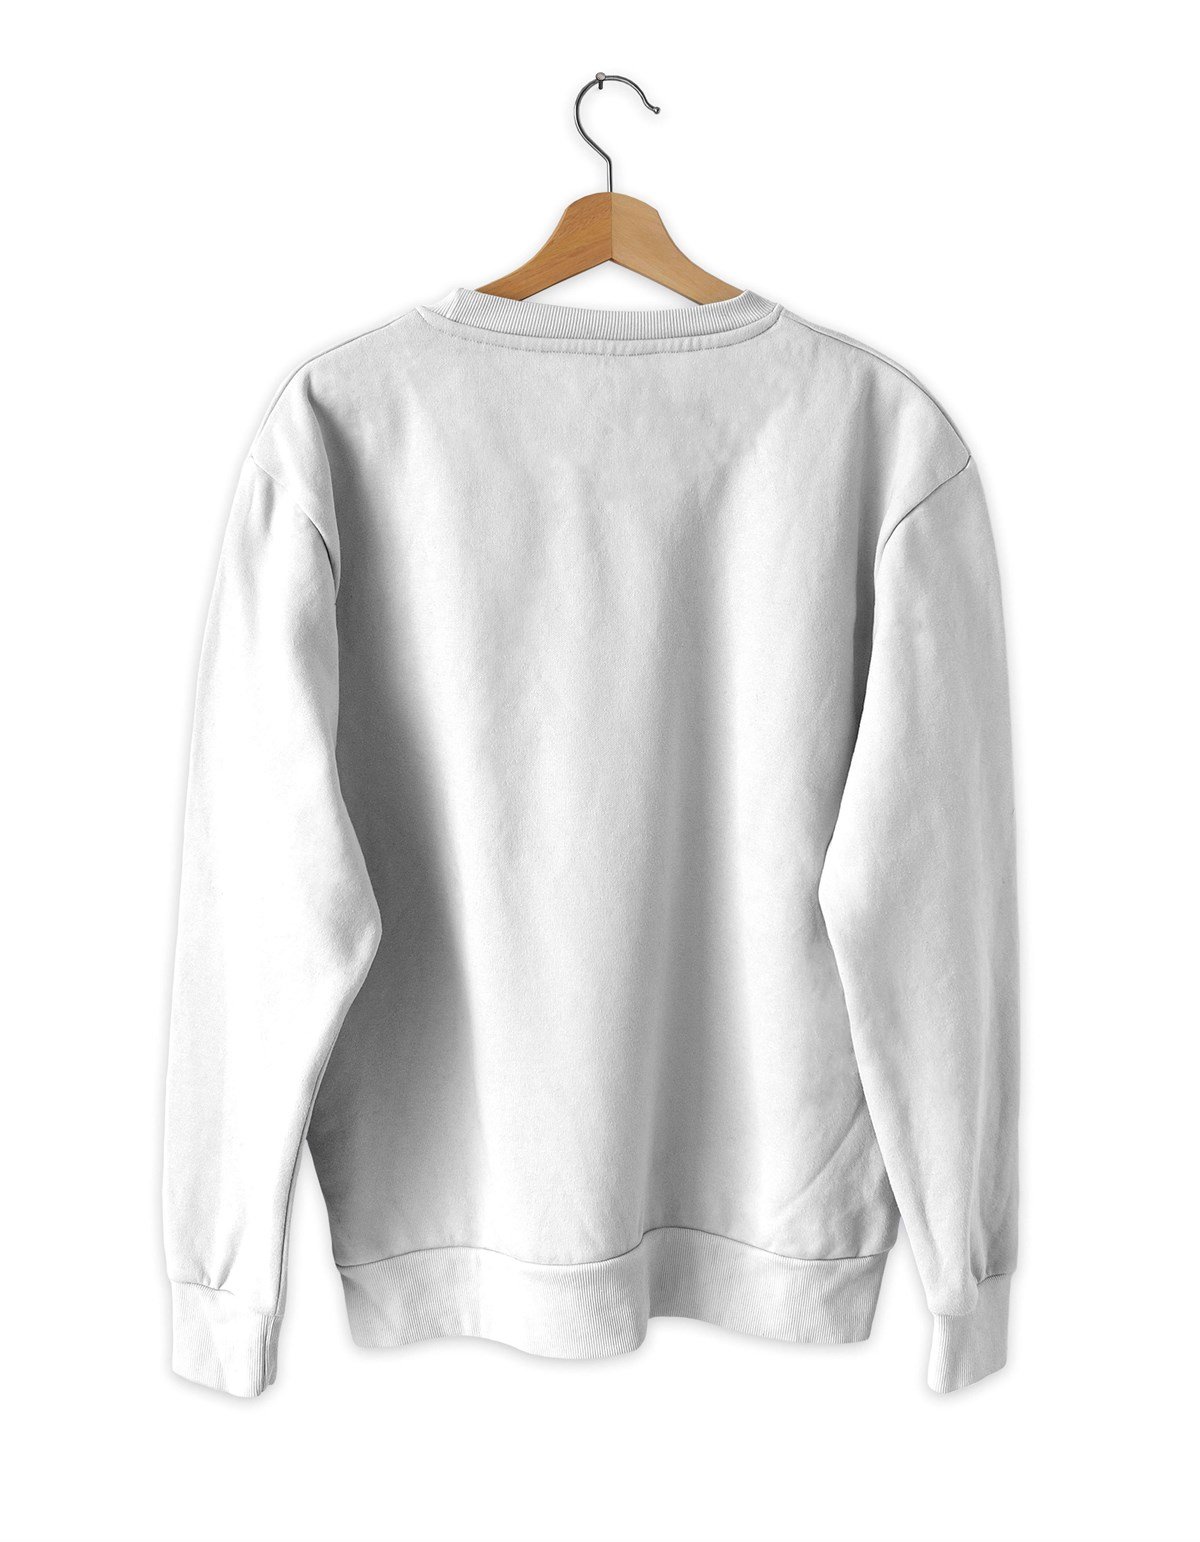 Kızılelma büyük Baskılı Slim Fit Siyah - Beyaz Sweatshirt | Teknobutik.com